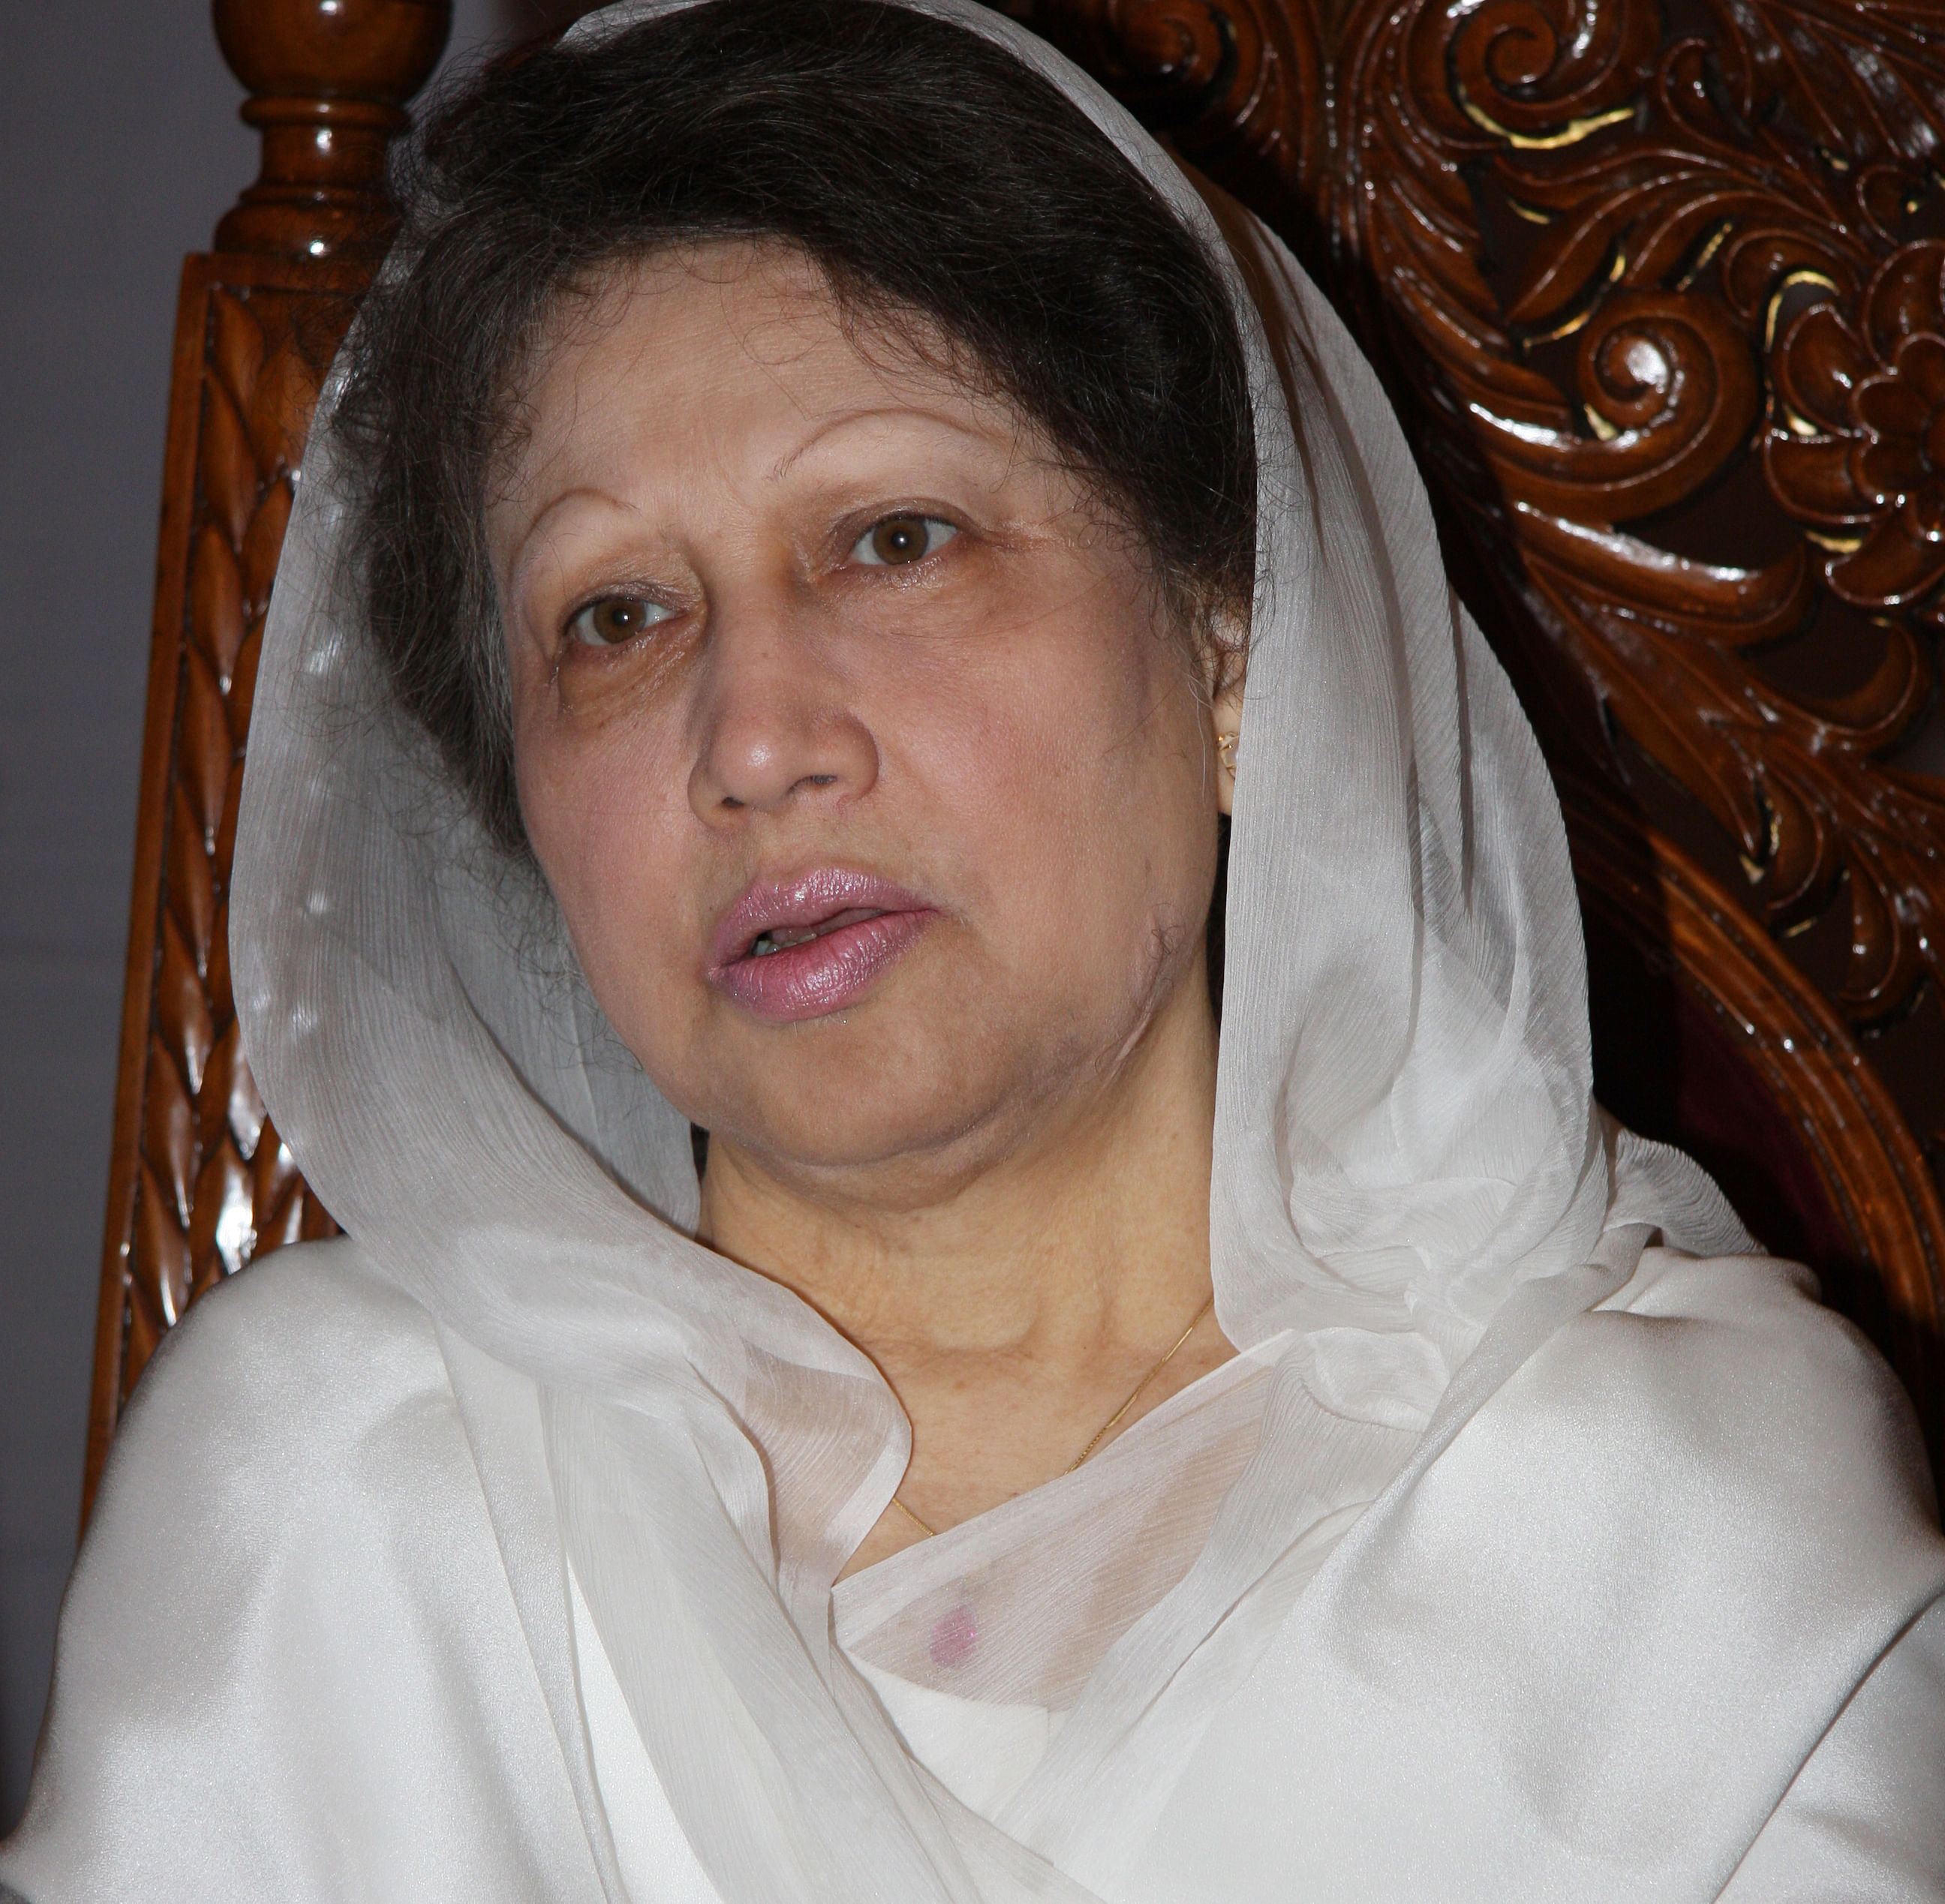 BNP Chairperson Khaleda Zia. Star file photo